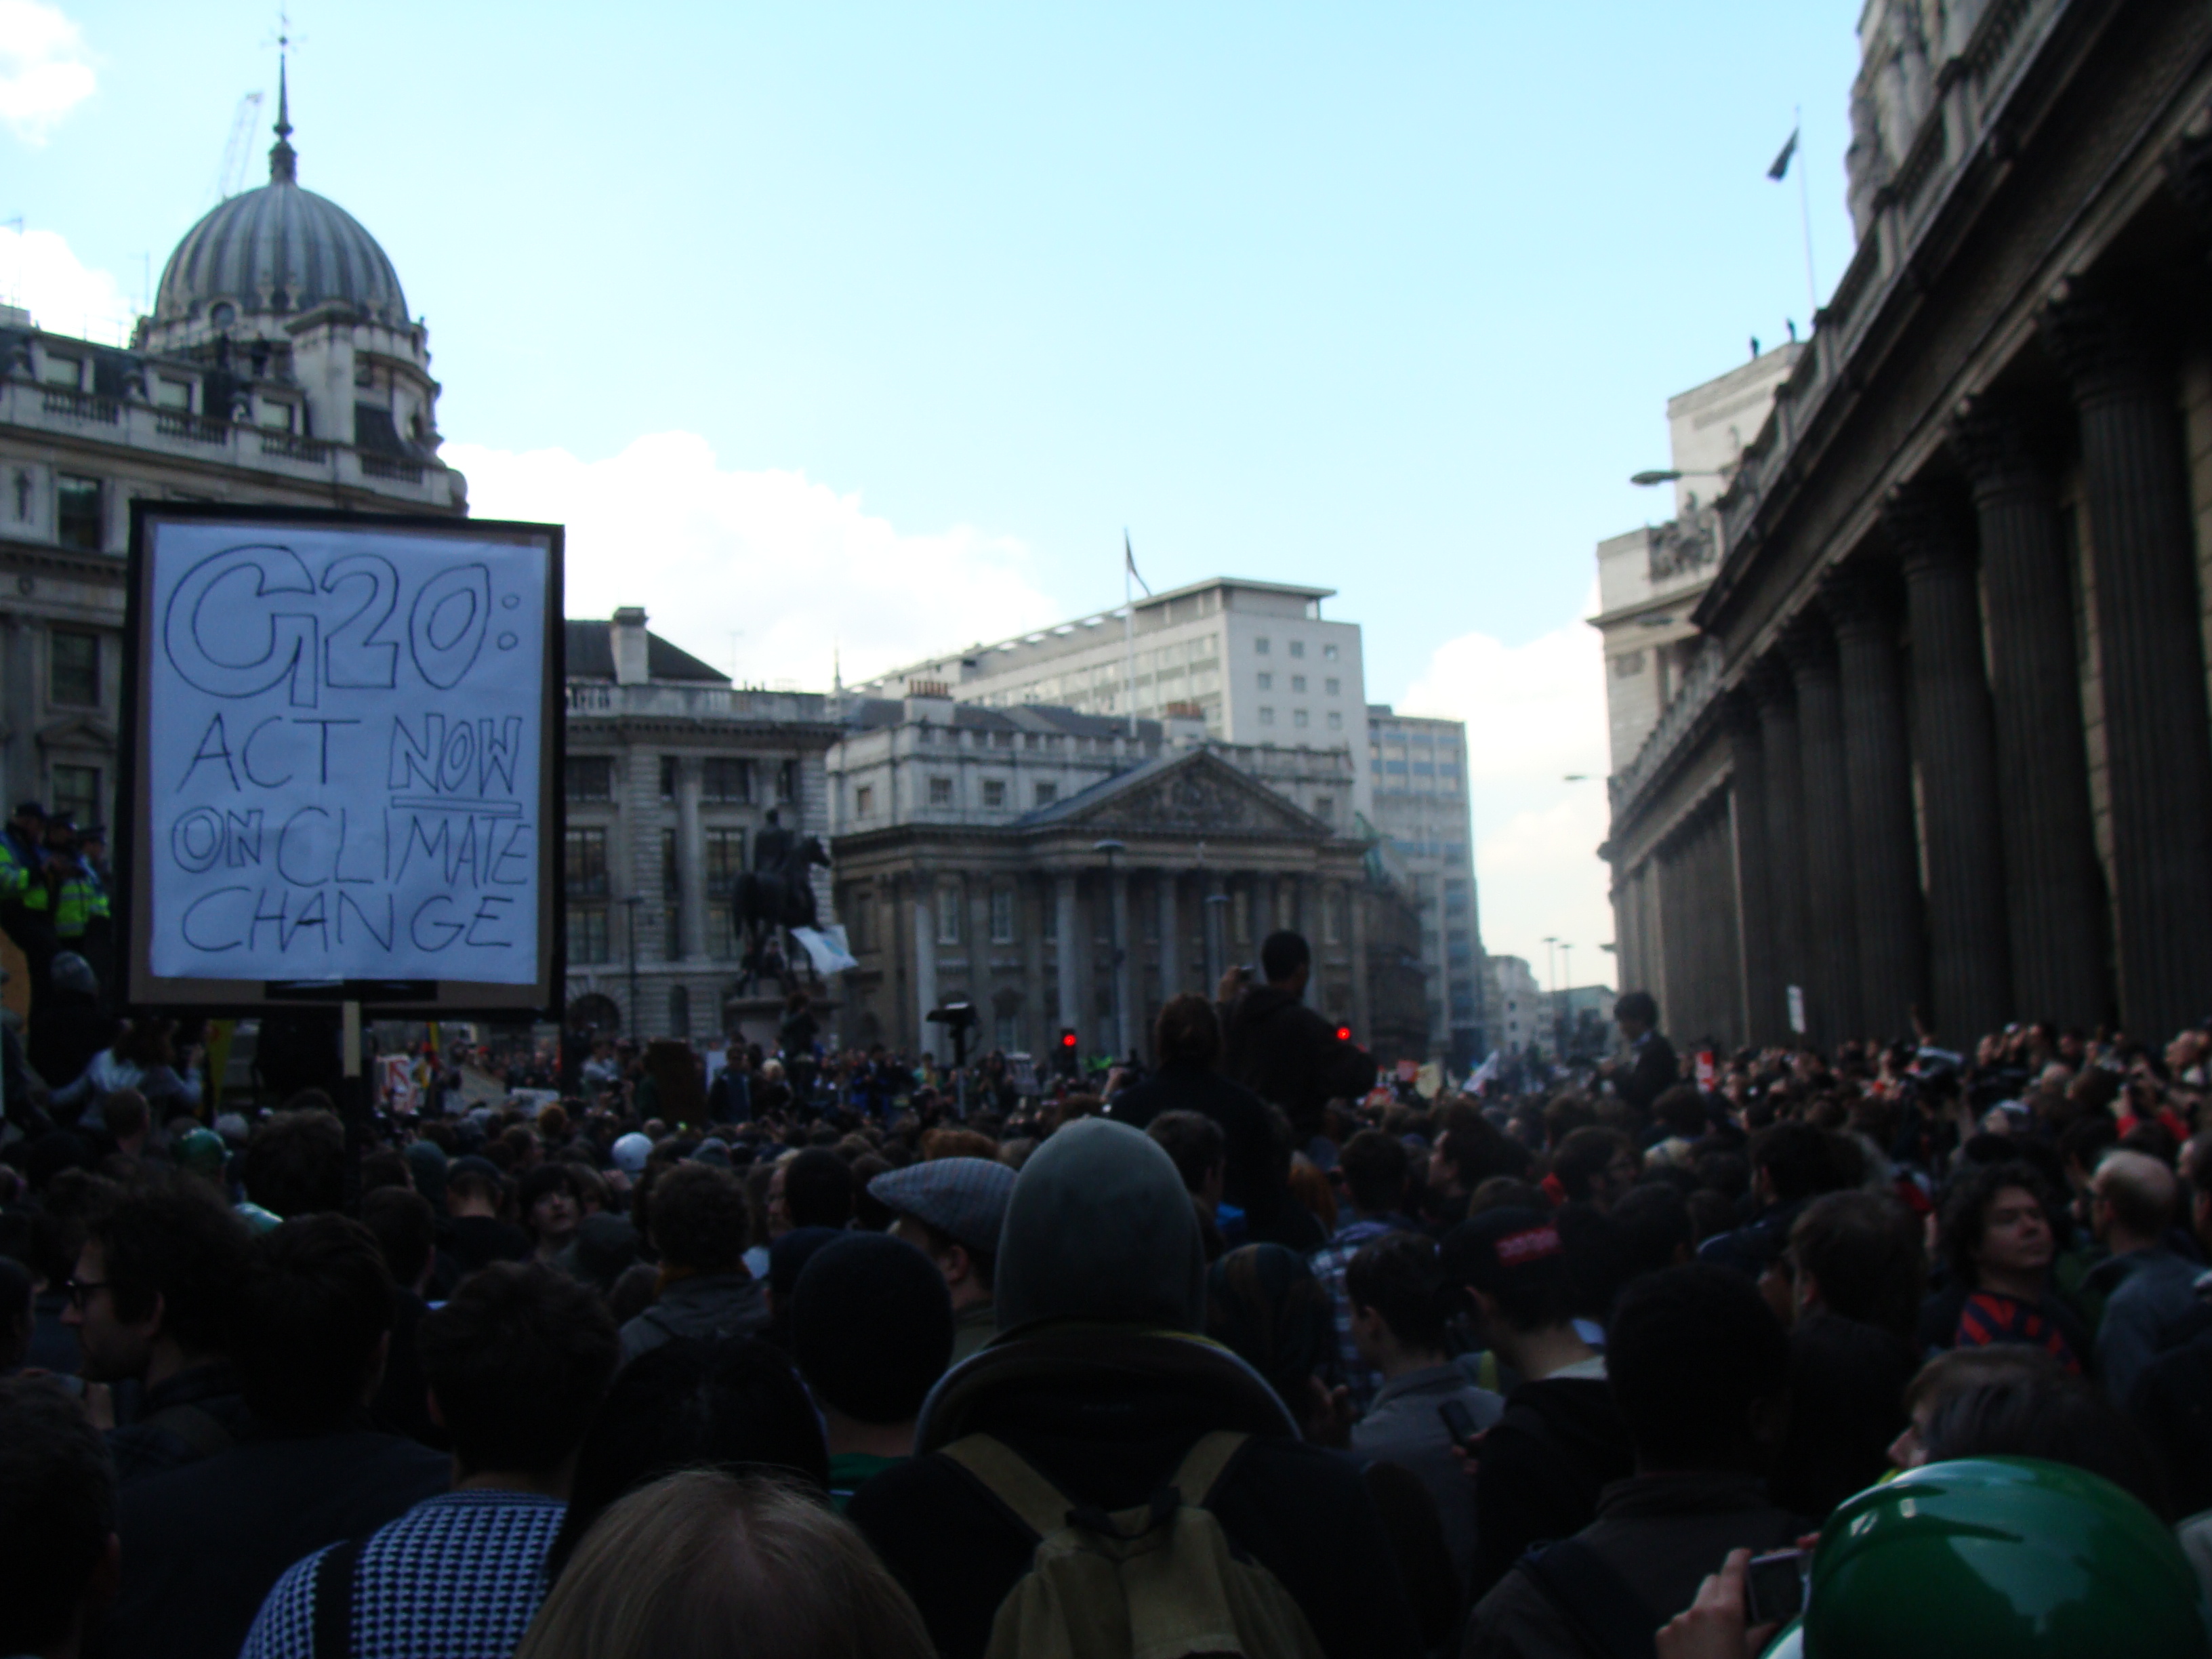 Ilmastoaktivistit liittyvät taloudellisiin mielenosoittajiin, jotka järjestävät G20-kokouksen ympärille Lontoossa.